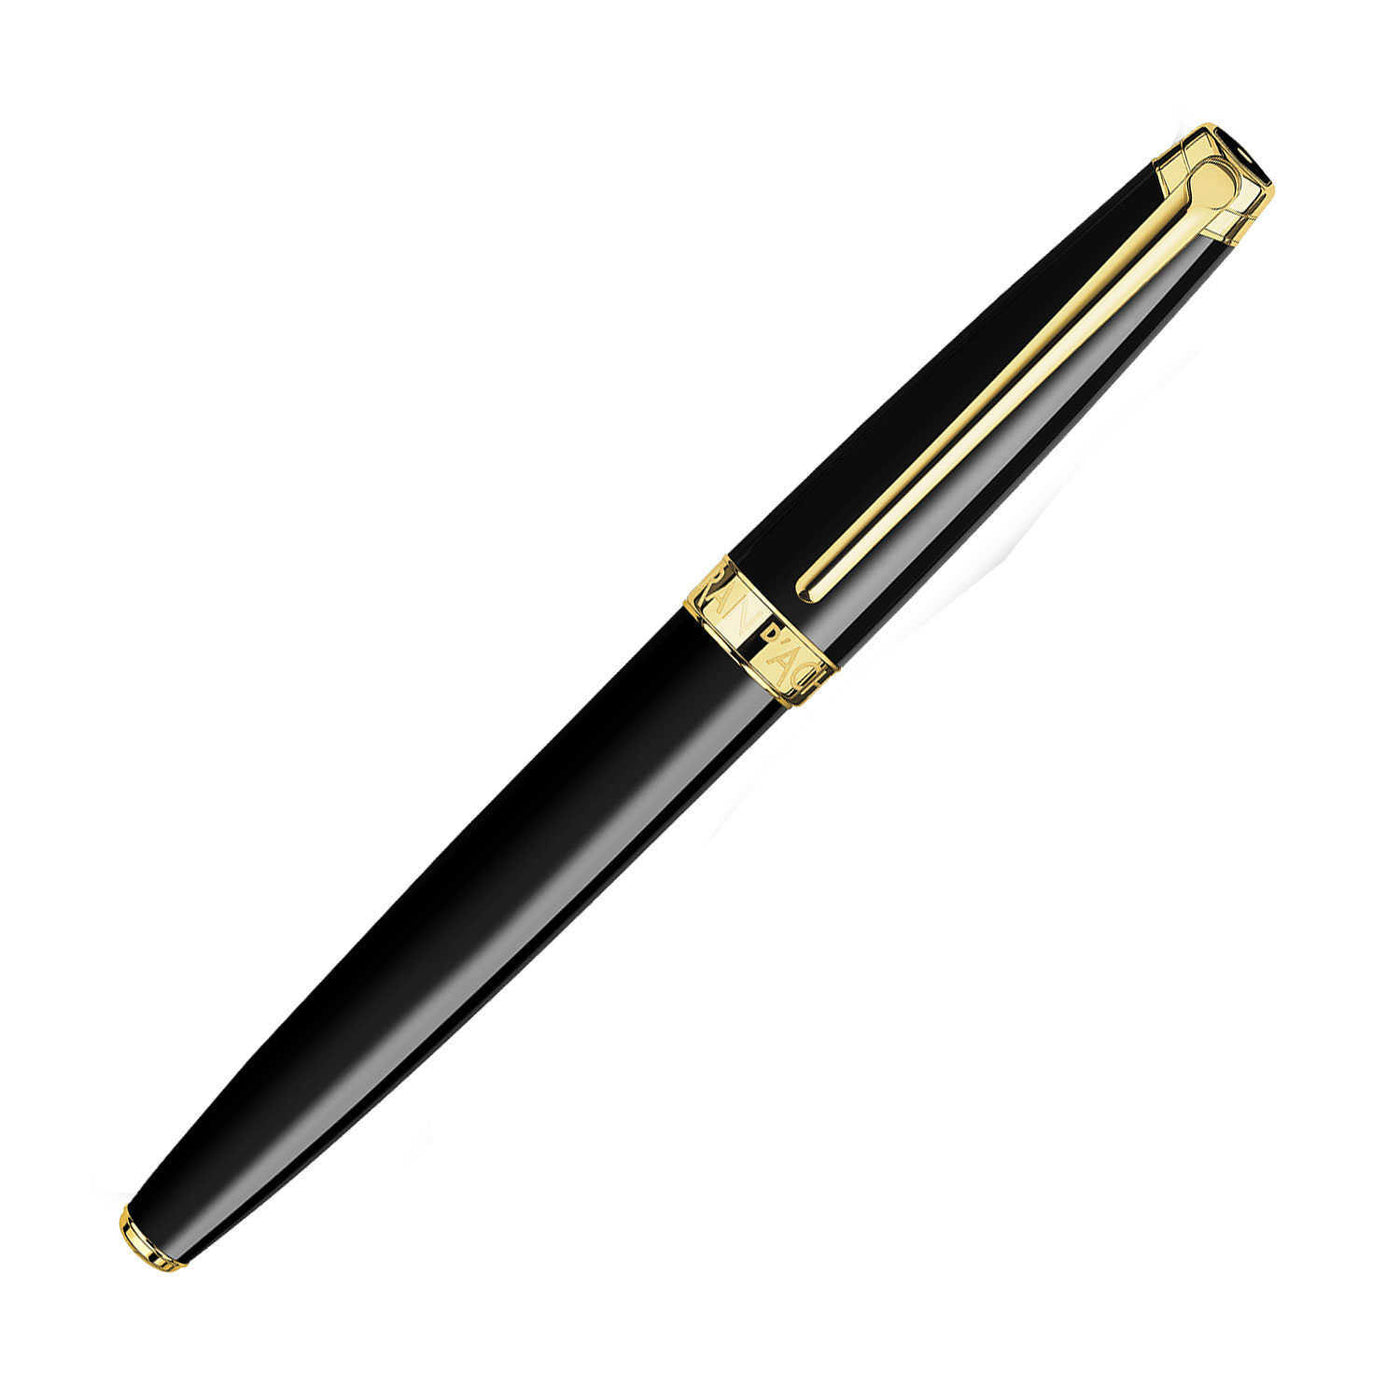 Caran D' Ache Leman Roller Ball Pen Black / Gold Trim 3